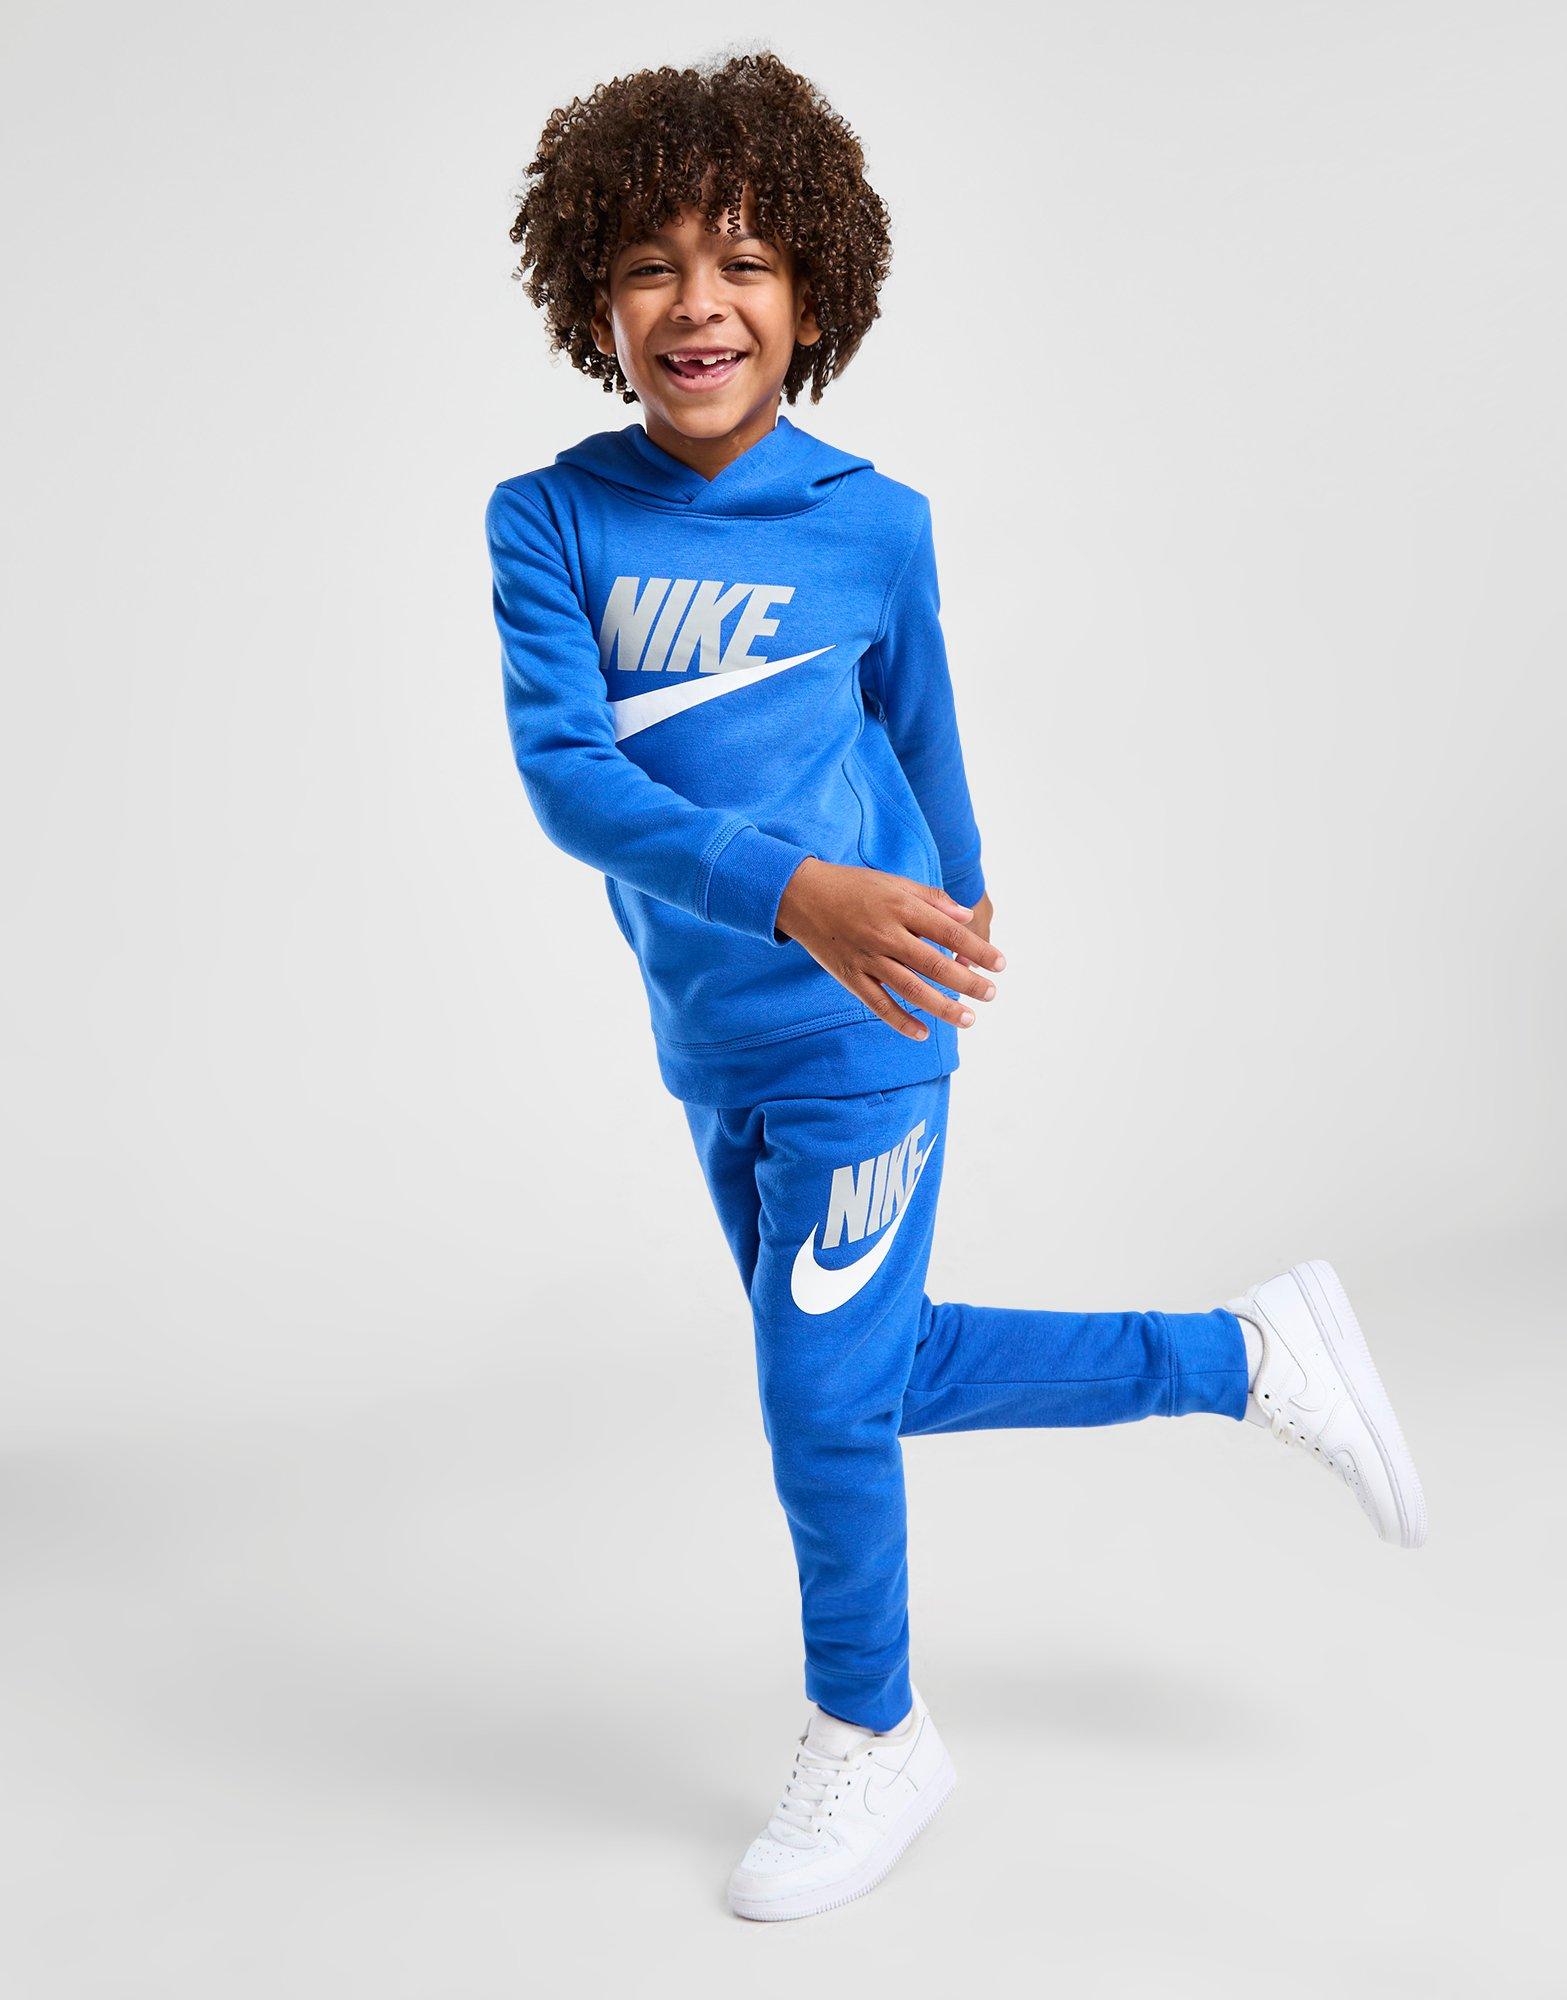 Enfant - Jordan Vêtements Enfant (3-7 ans) - JD Sports France